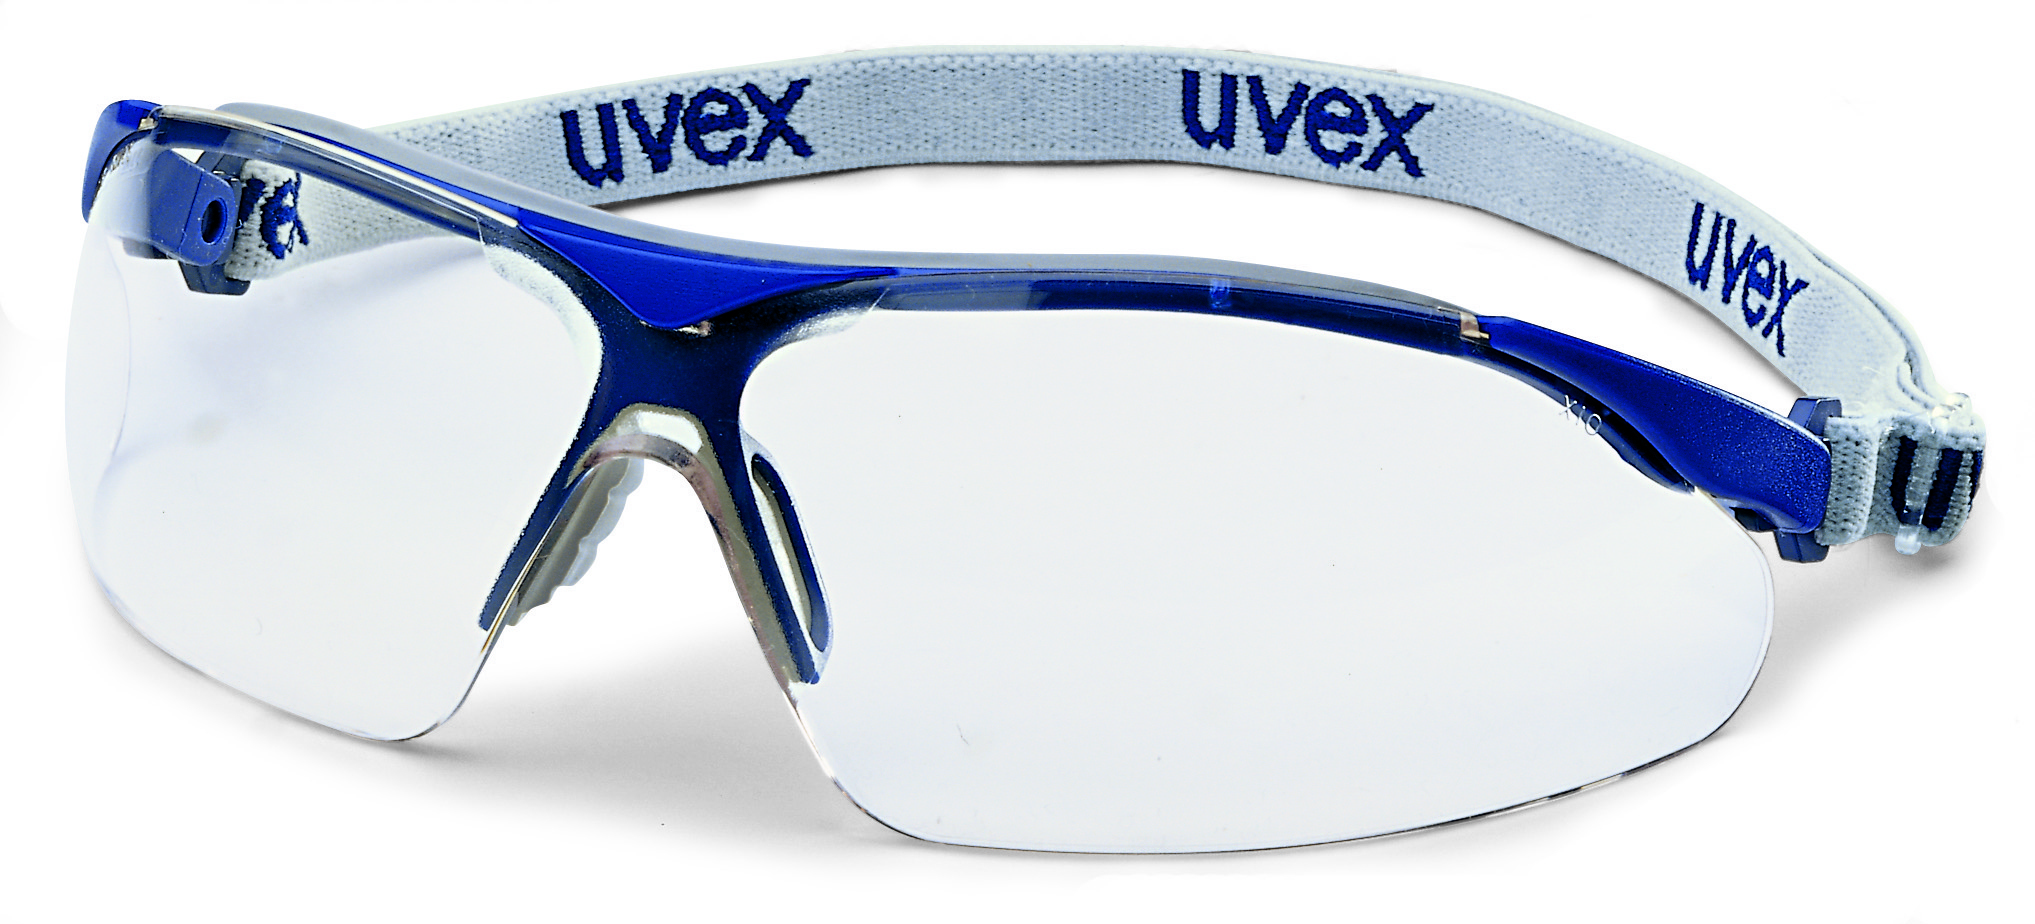 Brýle uvex i-vo Kód produktu: 9160120, Provedení zorníku: PC čirý/UV 2-1,2; SV. excellence, náhlavní pásek modrý/šedý